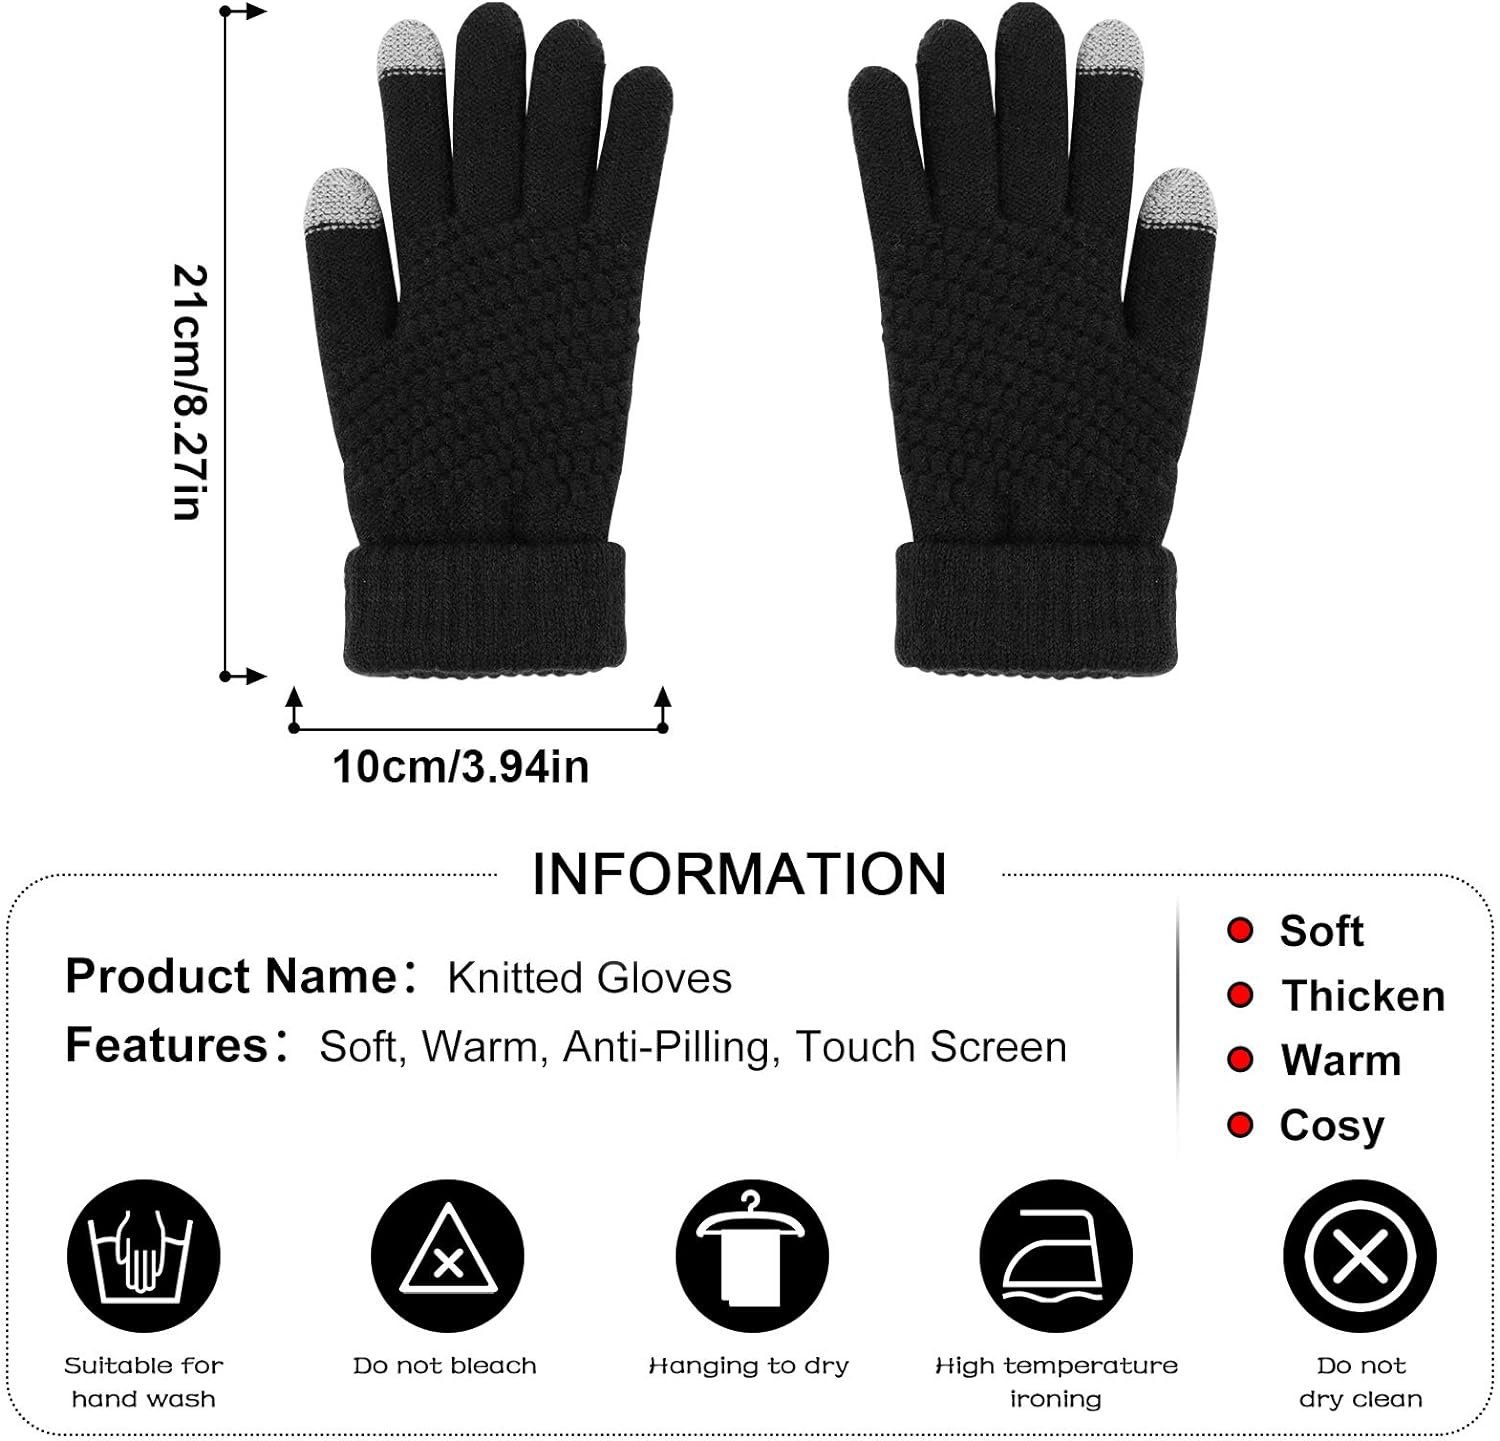 Alster Herz Alster Herz Fleecehandschuhe A0212 Schwarz Super Weiche Handschuhe, Unisex, Winter, Touchscreen